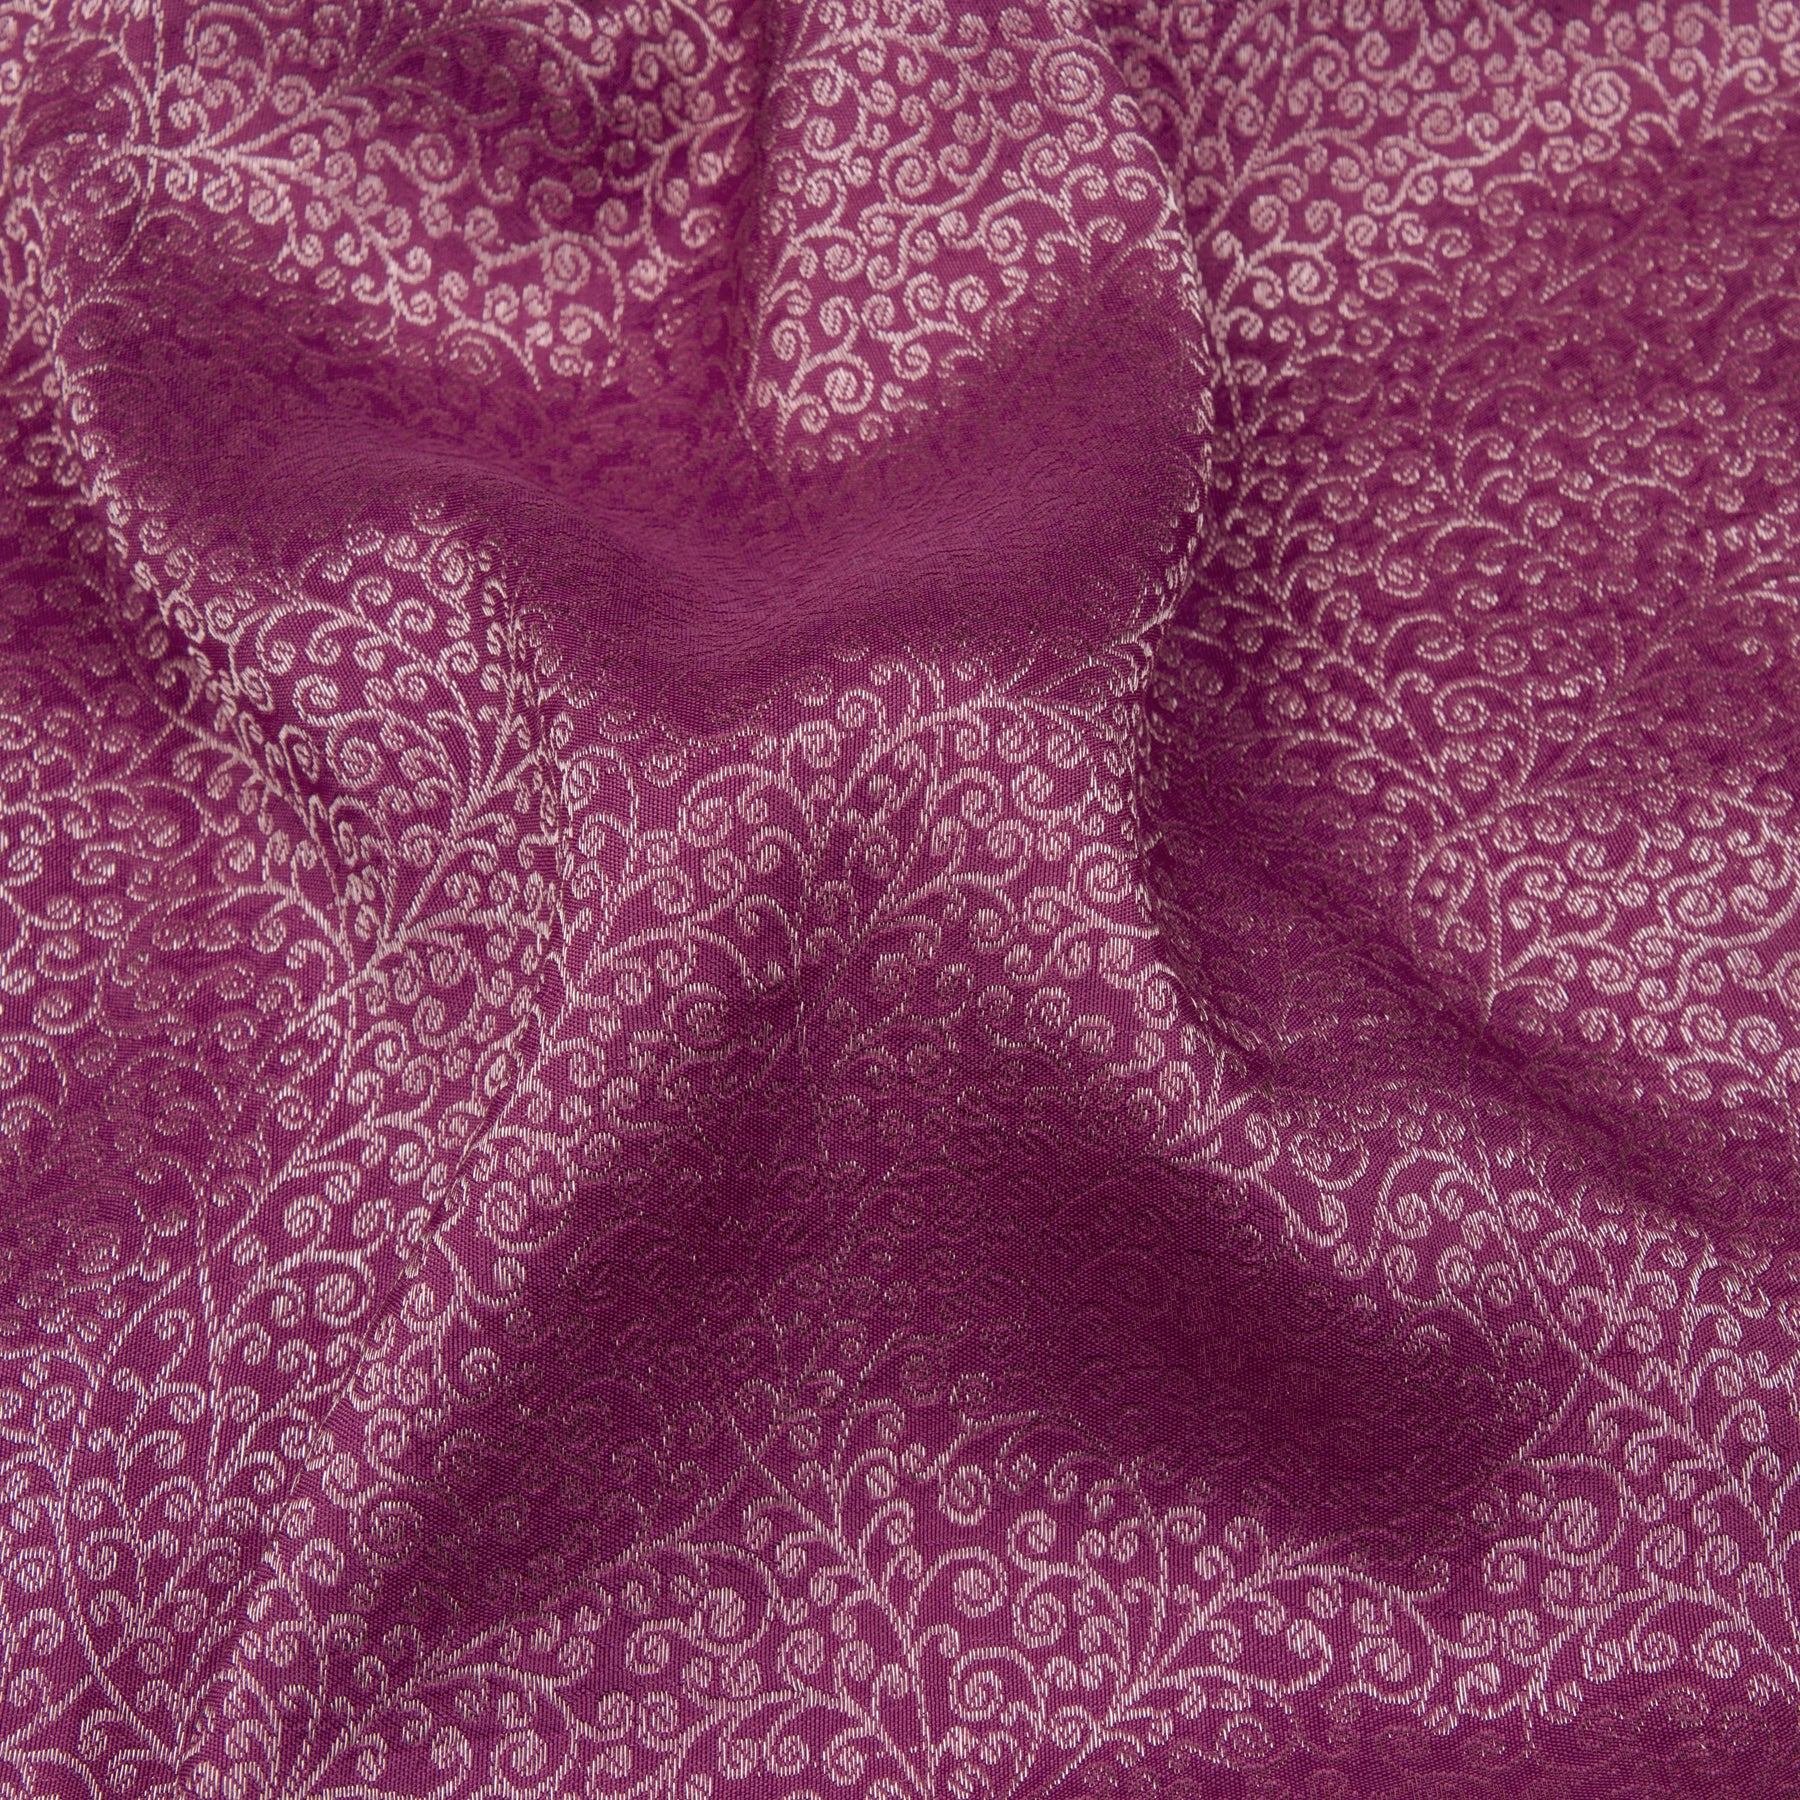 Kanakavalli Kanjivaram Silk Sari 21-586-HS001-07113 - Fabric View